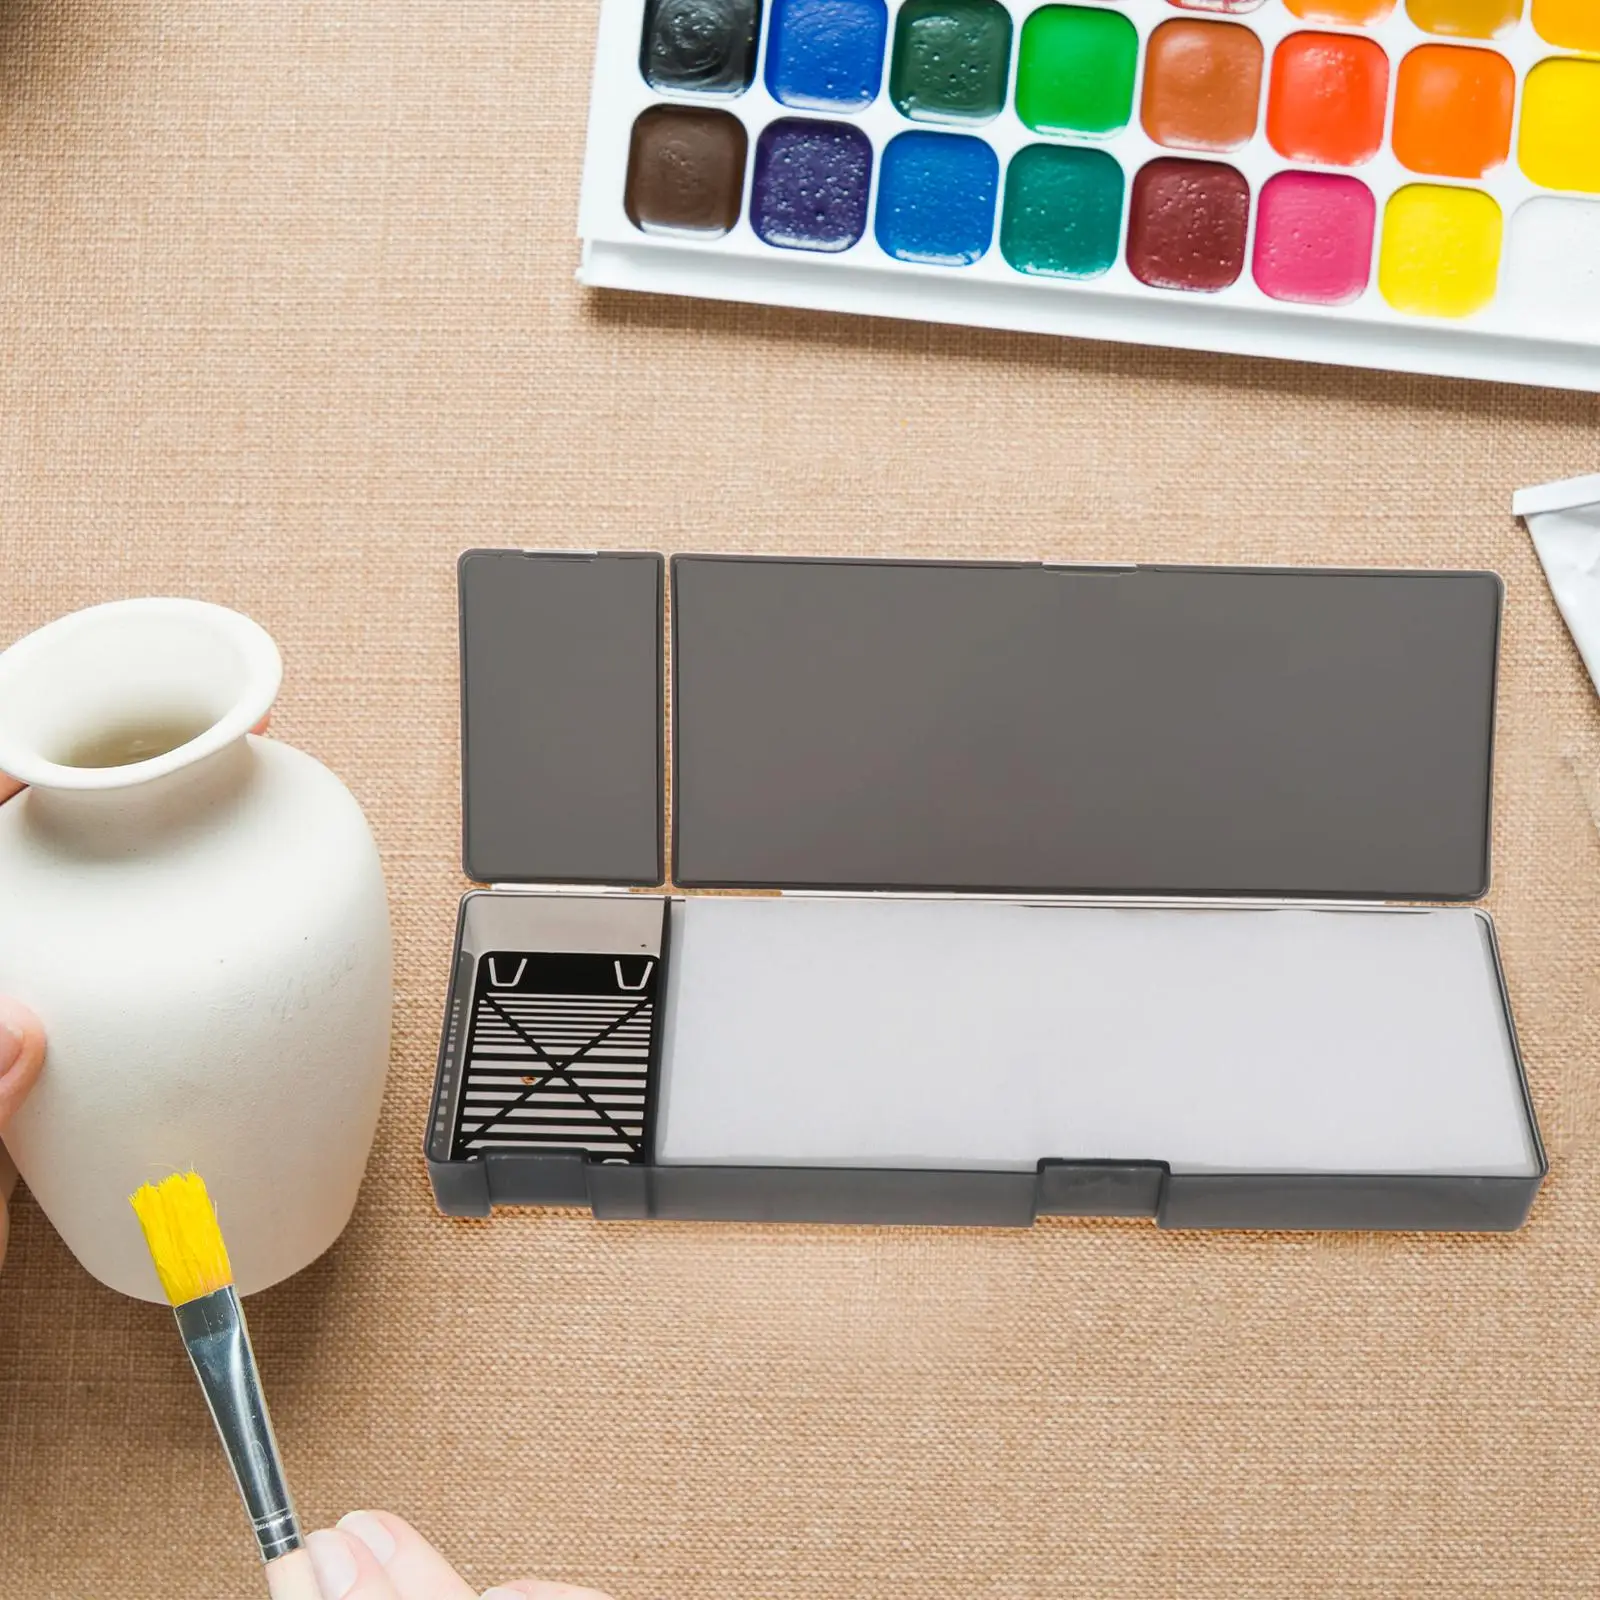 Wet Palette Keeps Your Paint Wet Paint Holder Model Coloring Wet Tray Paint Palette Pallet for Miniature Painting Acrylic Paints